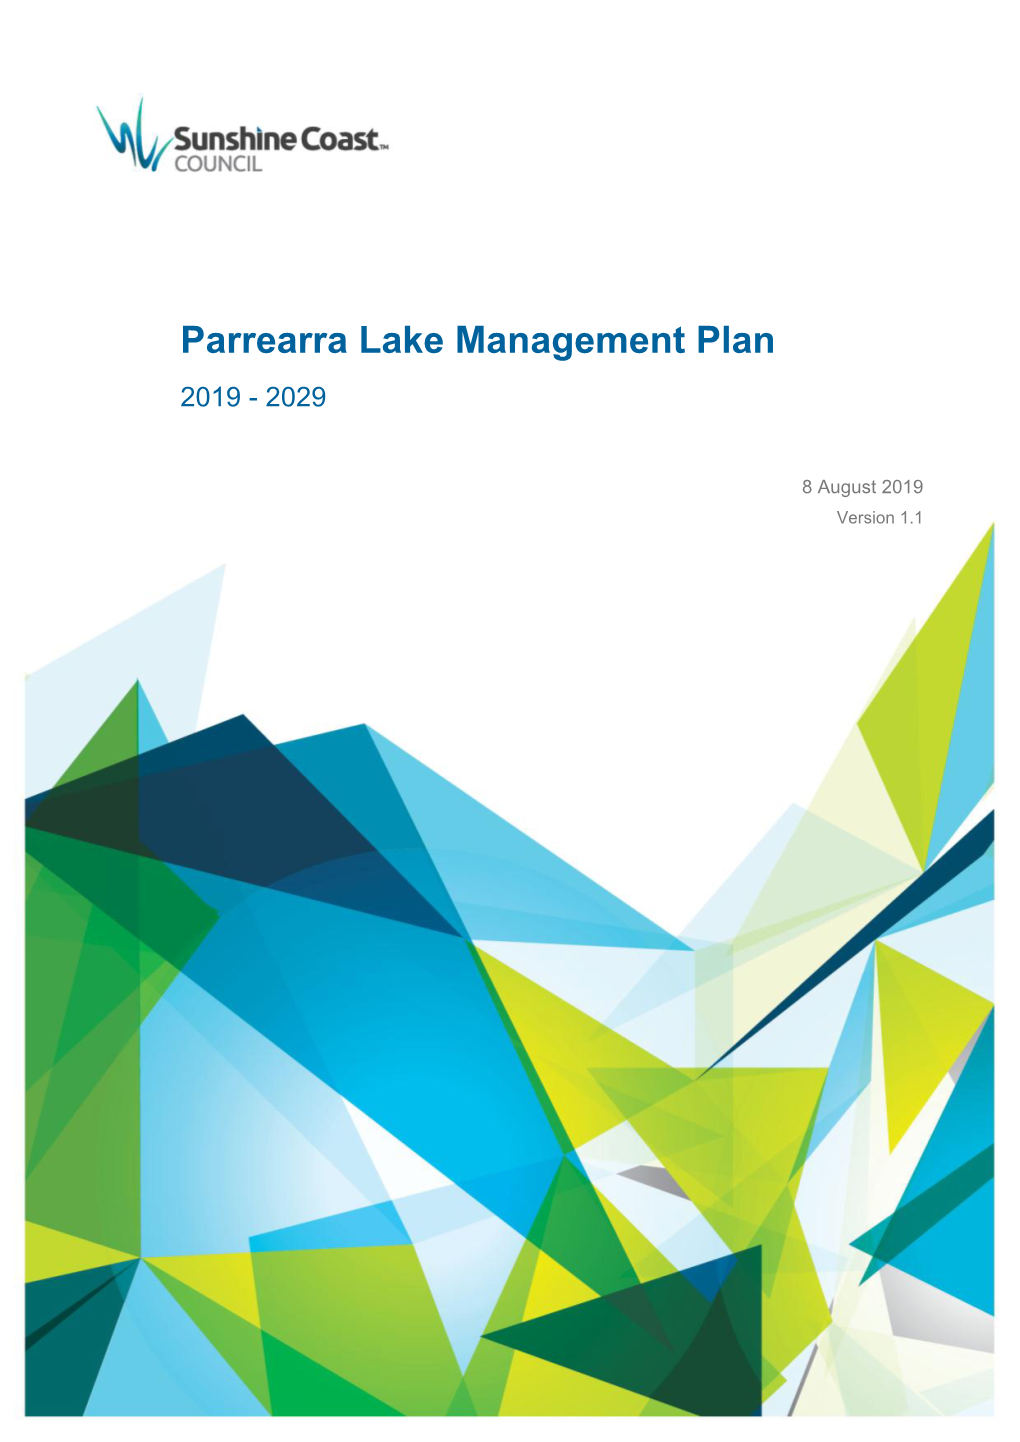 Parrearra Lake Management Plan 2019 - 2029